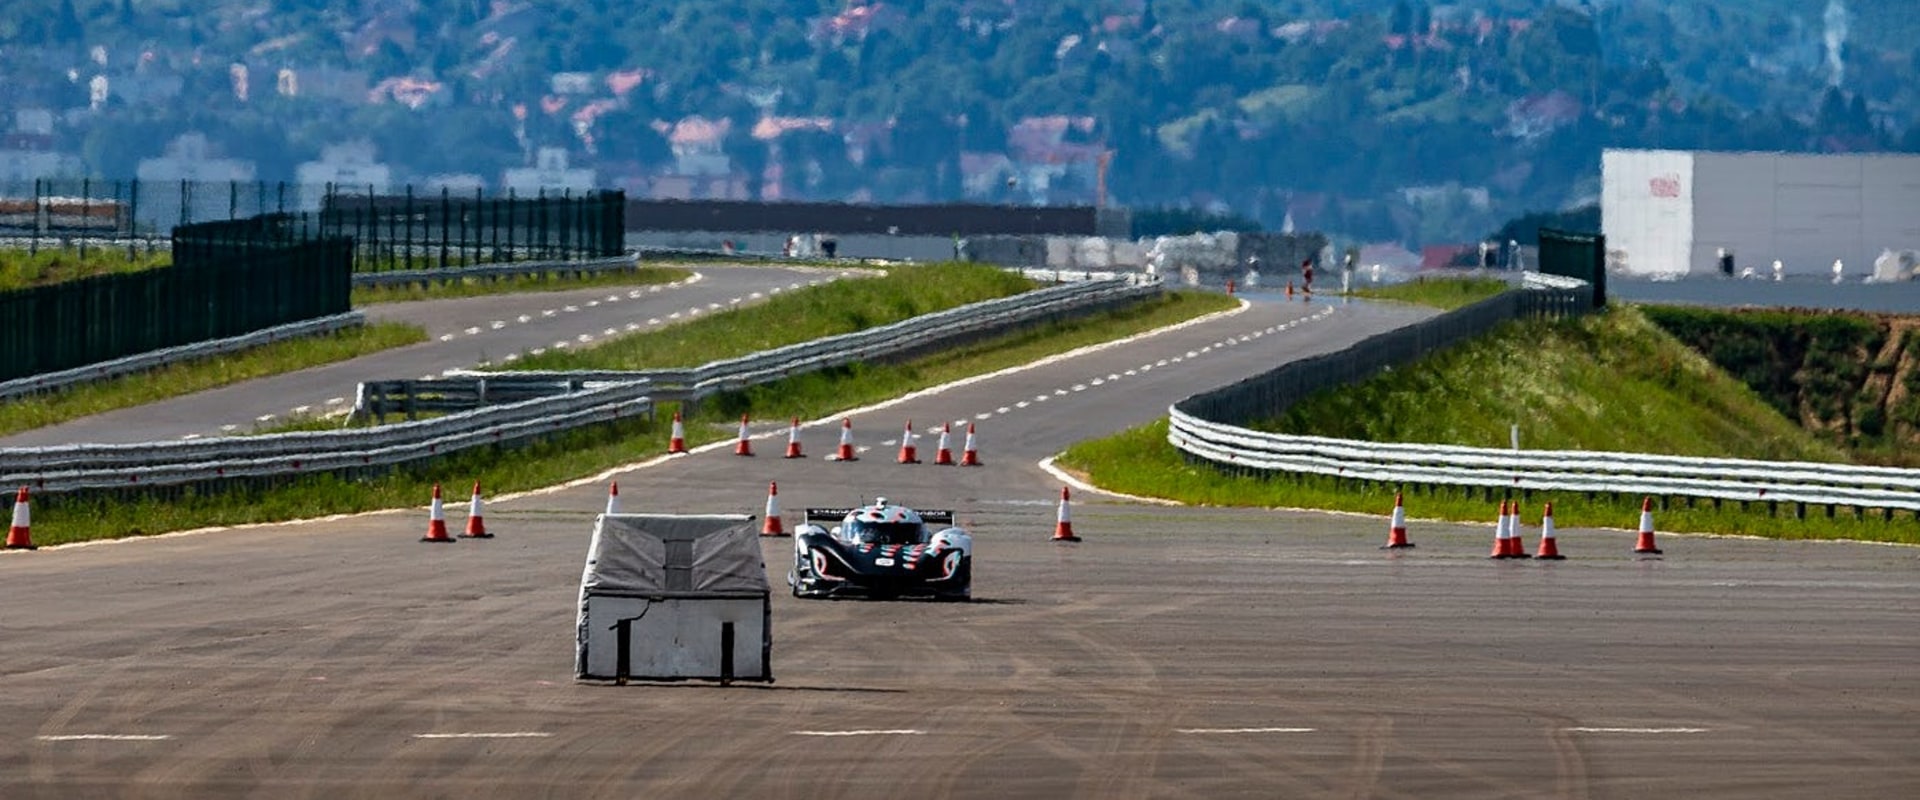 Understanding Circuit Racing: An Overview